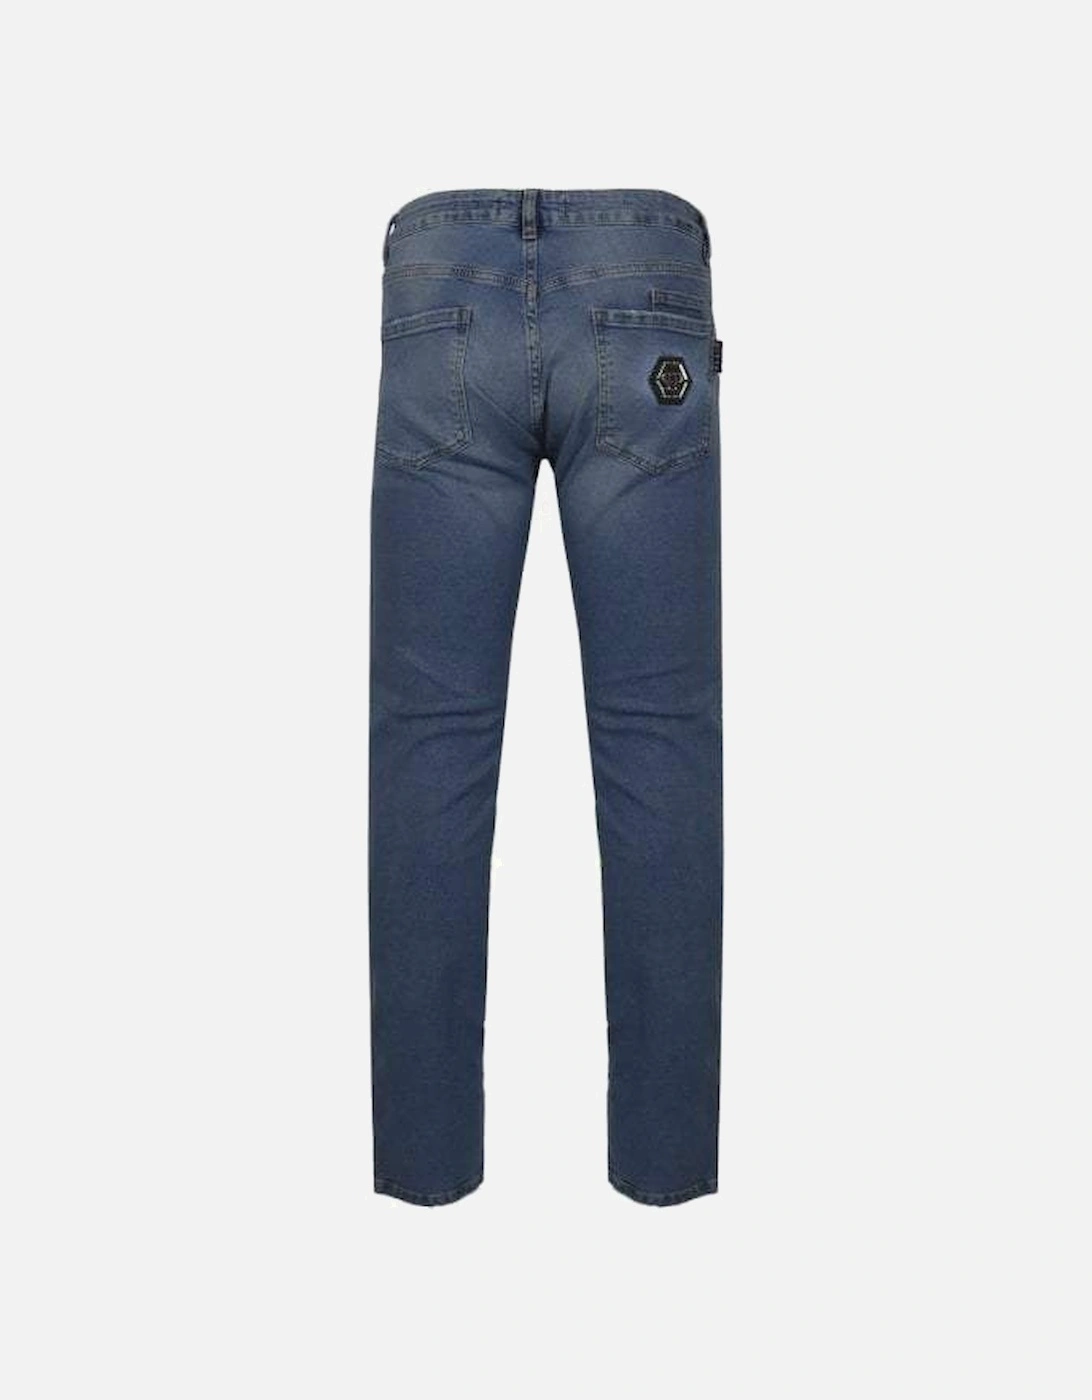 Men's Super Straight Cut Jeans Blue